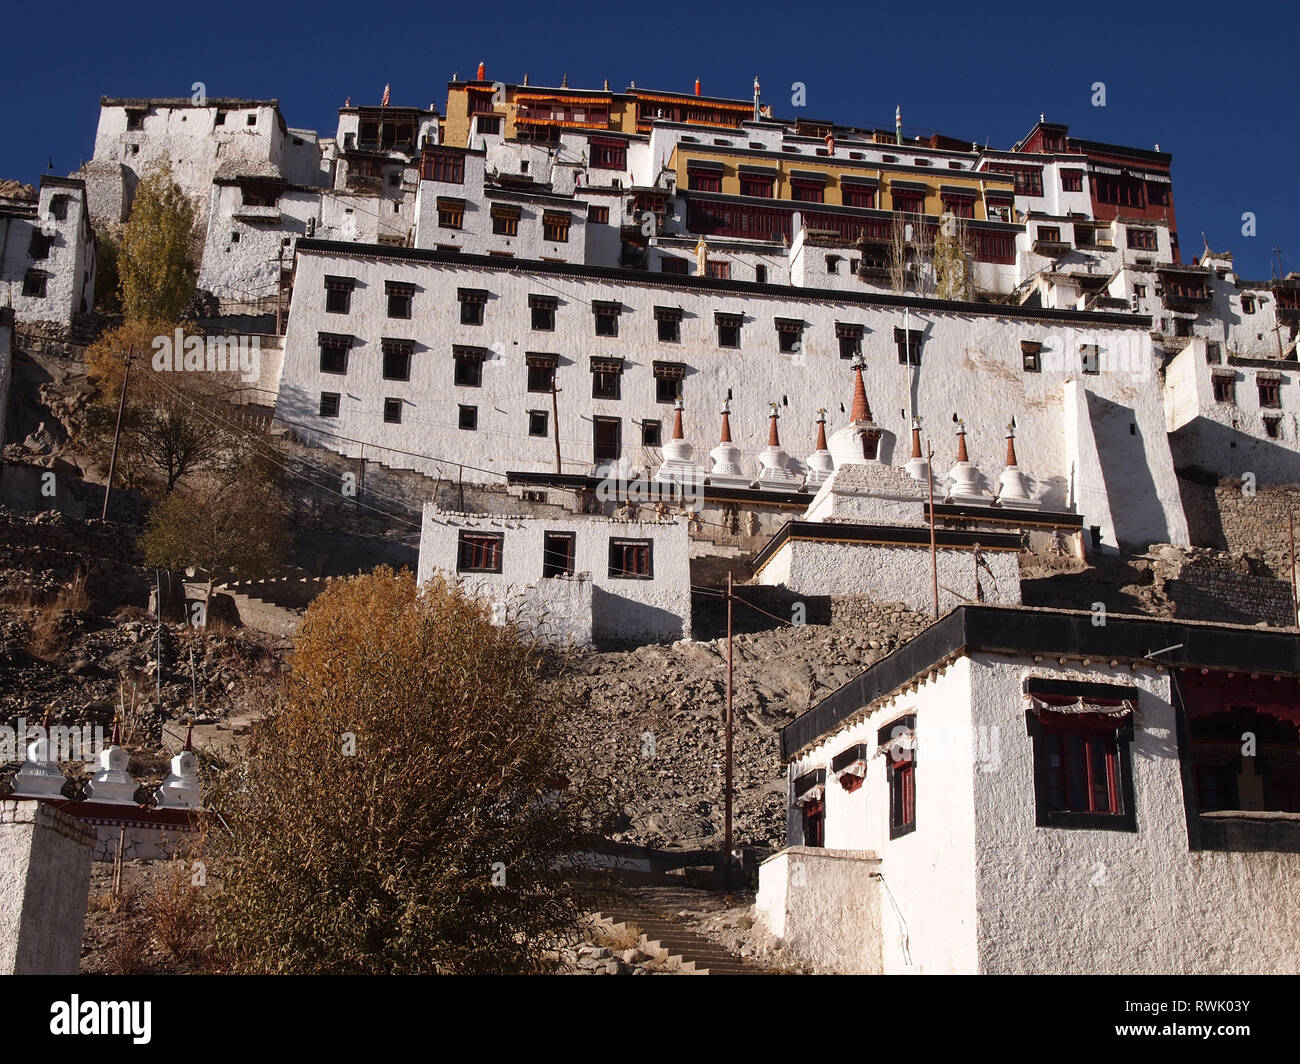 Thiksey Monastery, also known as “little Potala”, near Leh (Ladakh) Stock Photo